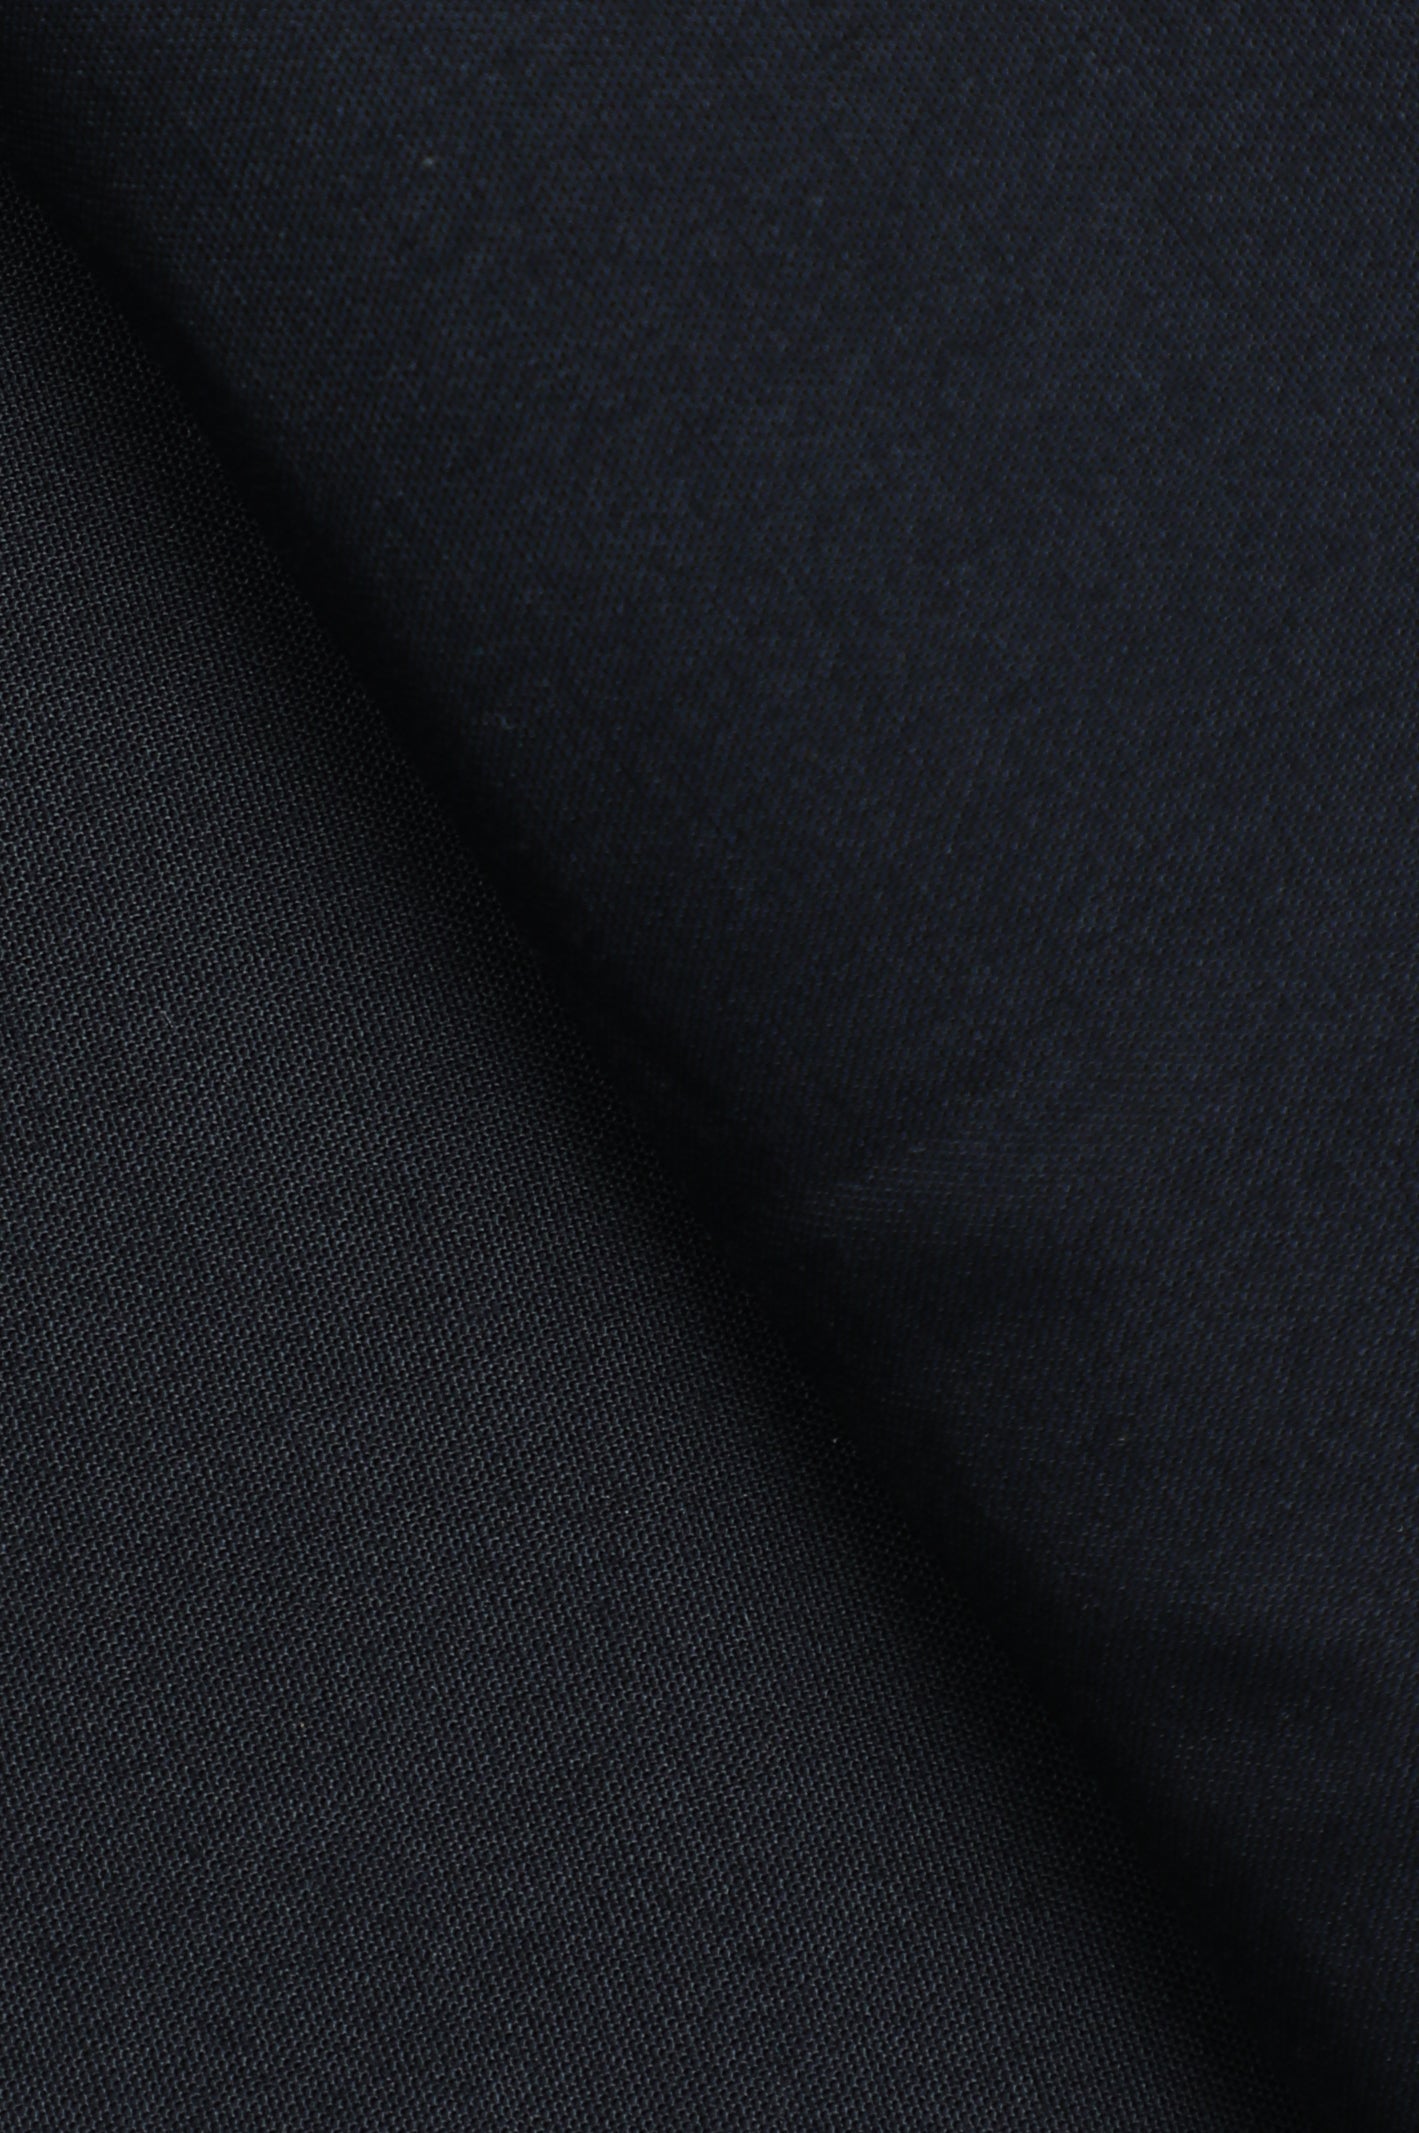 Blended Unstitched Fabric for Men SKU: US0191-BLACK - Diners